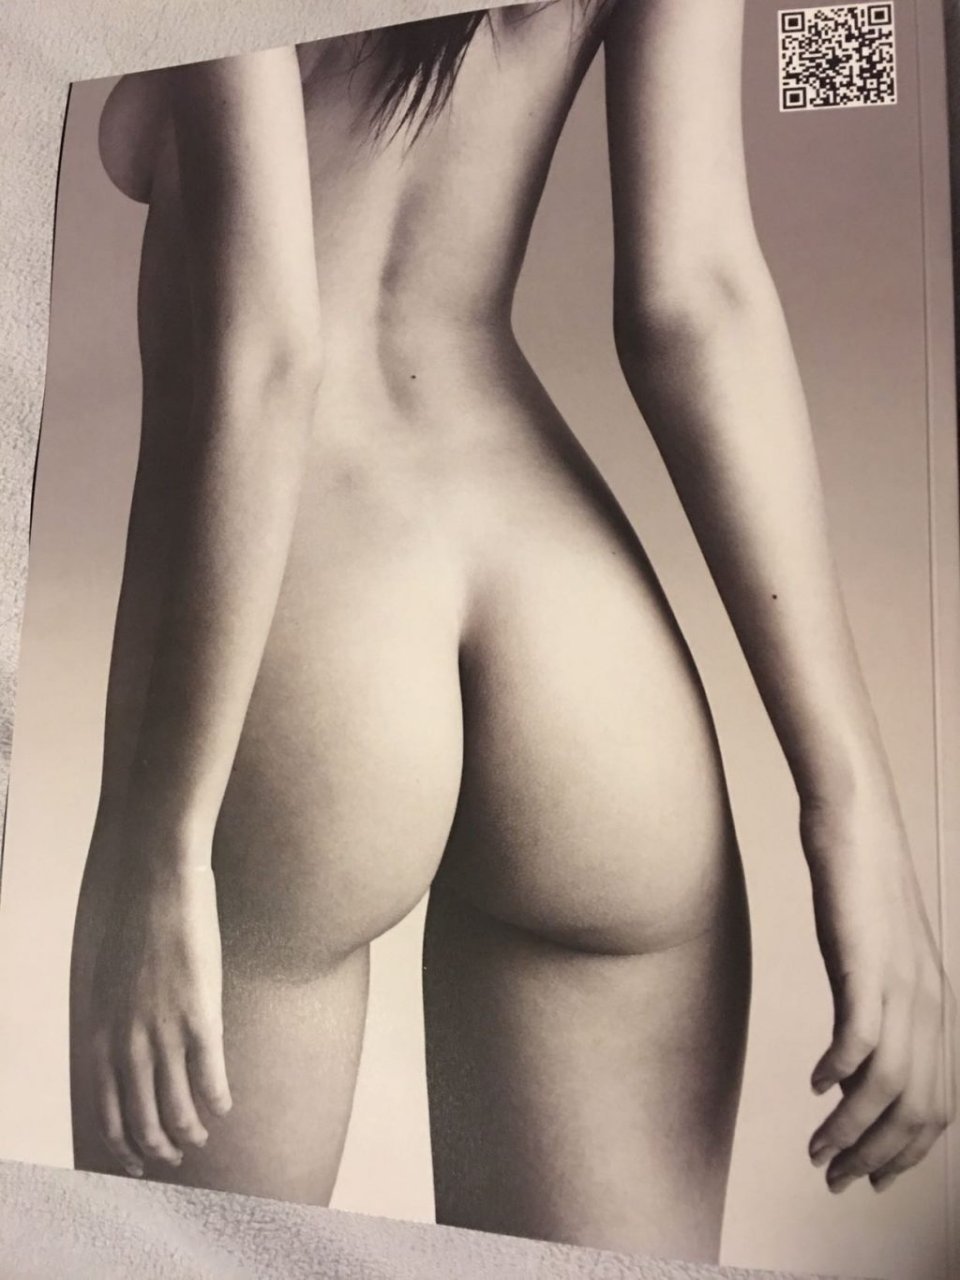 Emily Ratajkowski Naked (6 Hot Photos)